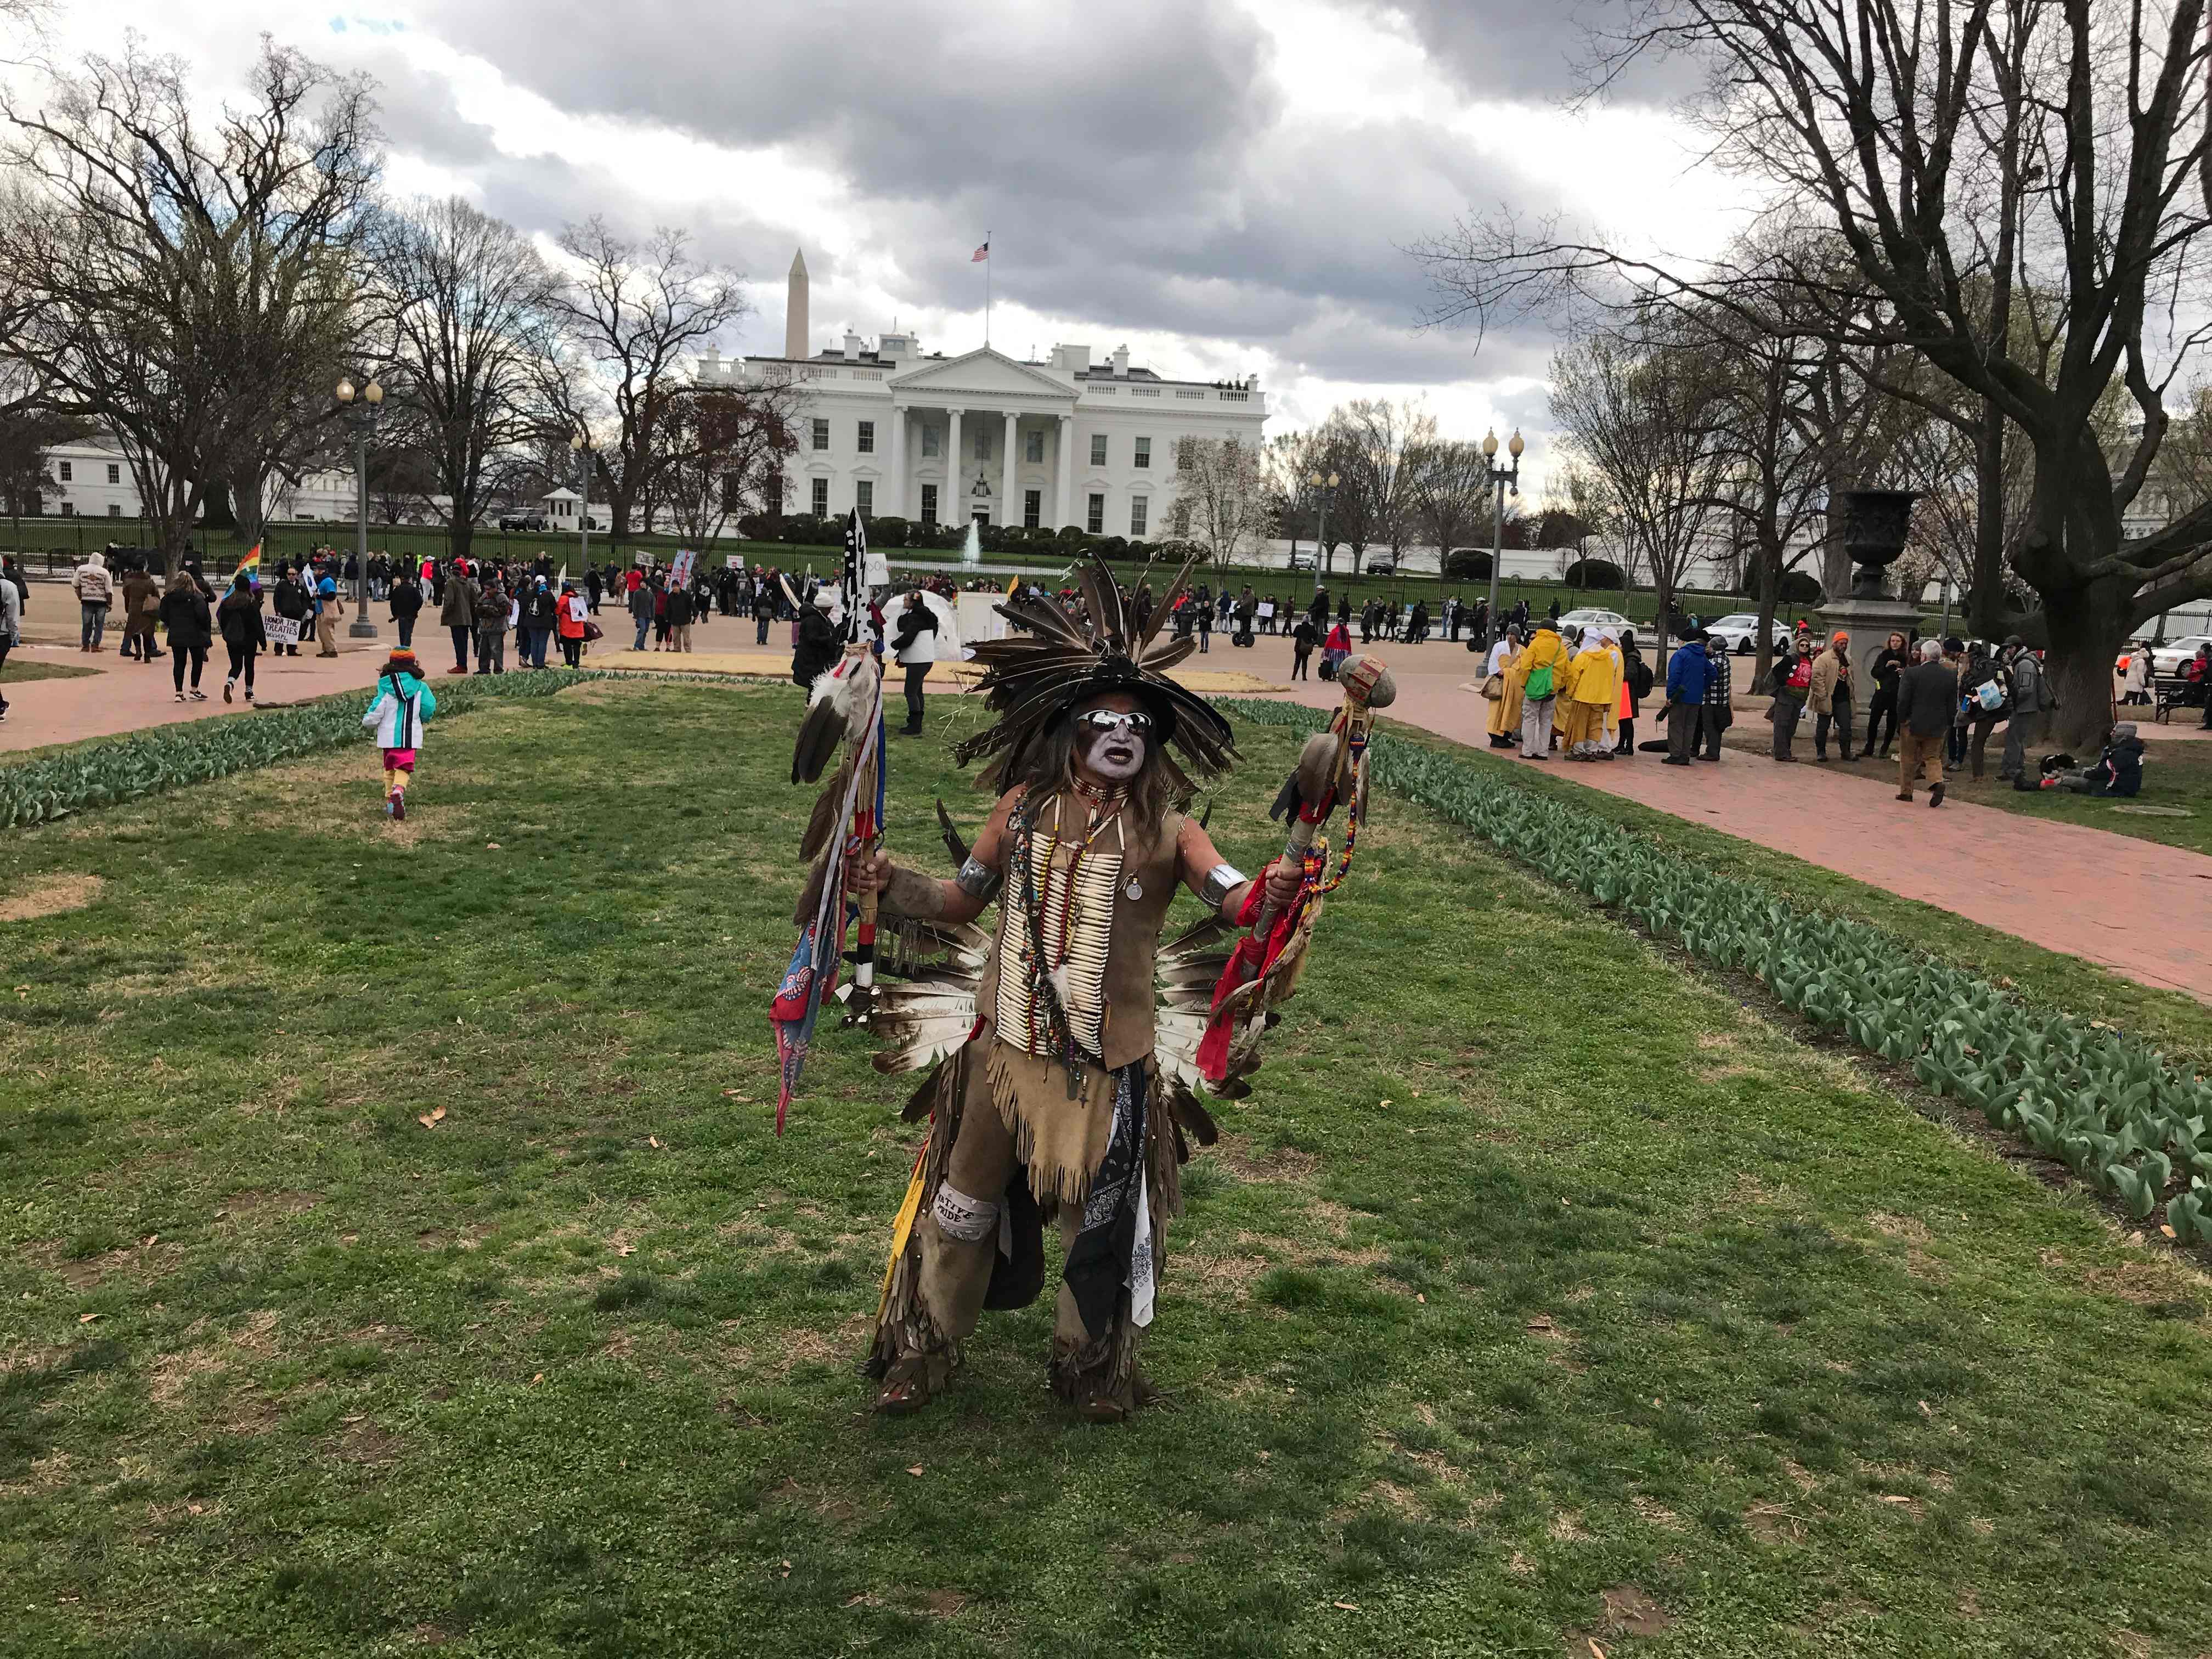 Indígenas protestan frente a la Casa Blanca contra oleoducto